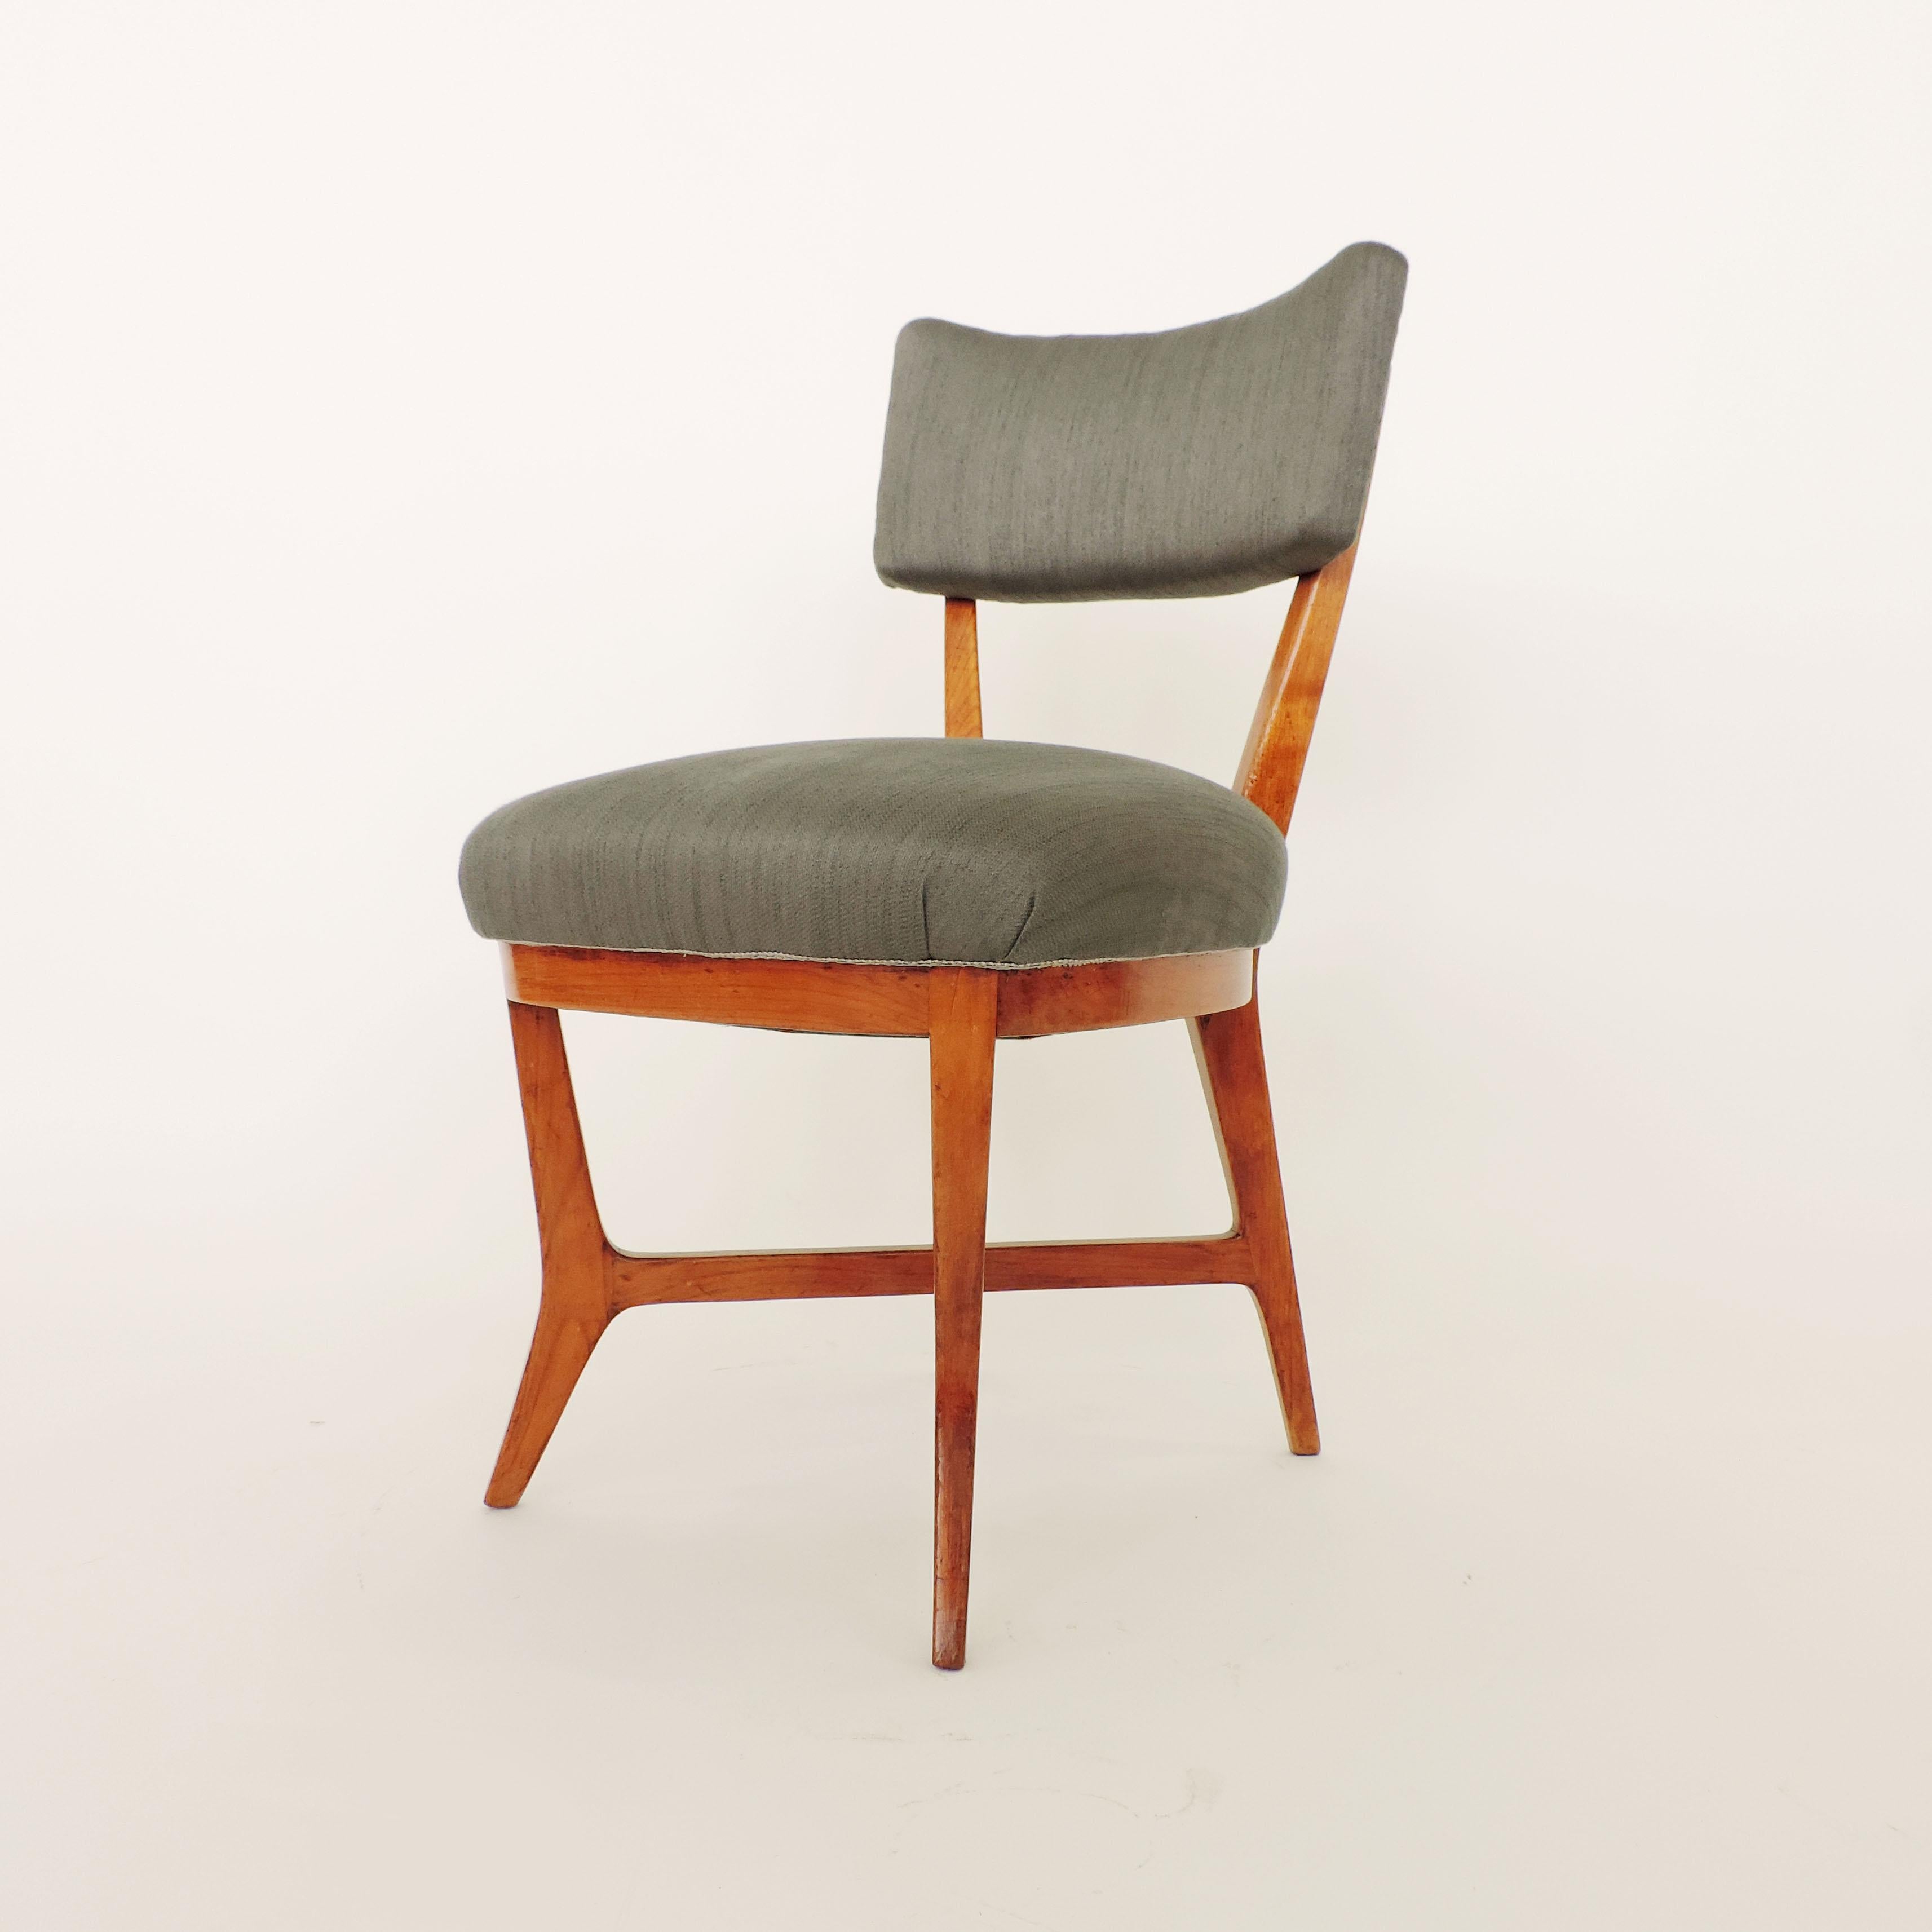 Quatre chaises attribuées au Studio BBPR
La structure est identique aux versions ultérieures des chaises Elettra réalisées pour Arflex.